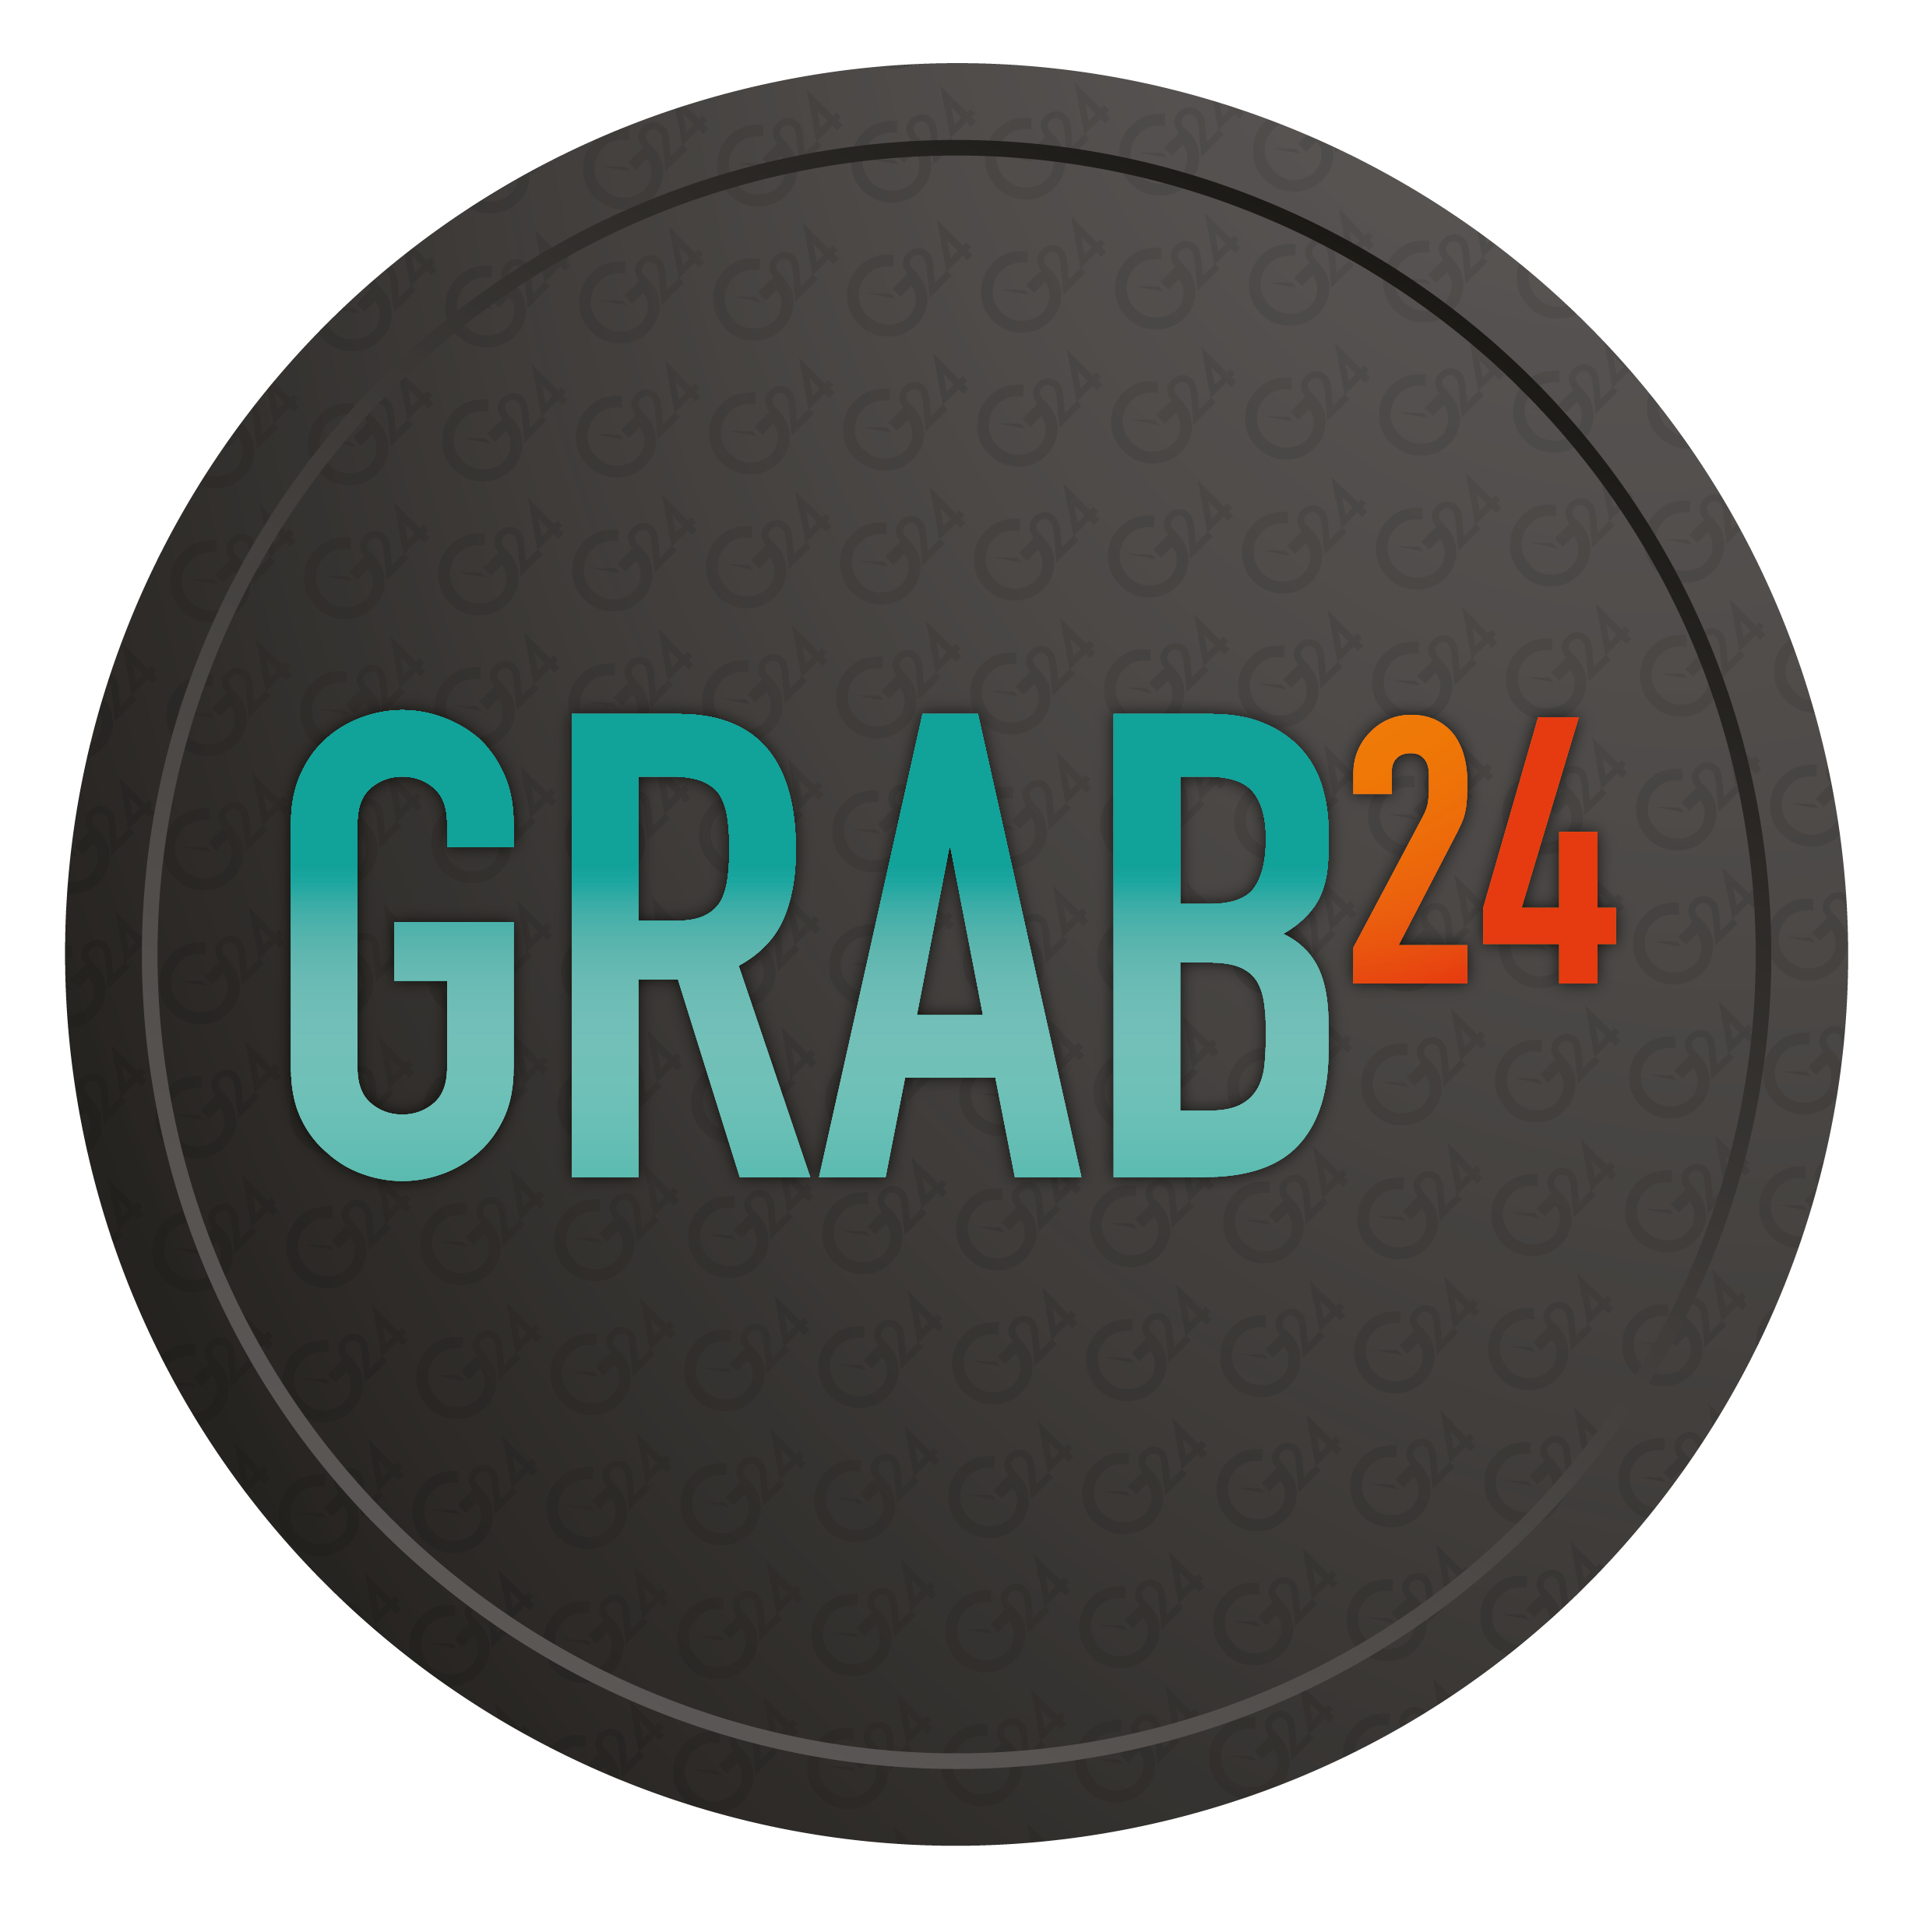 Grab-24